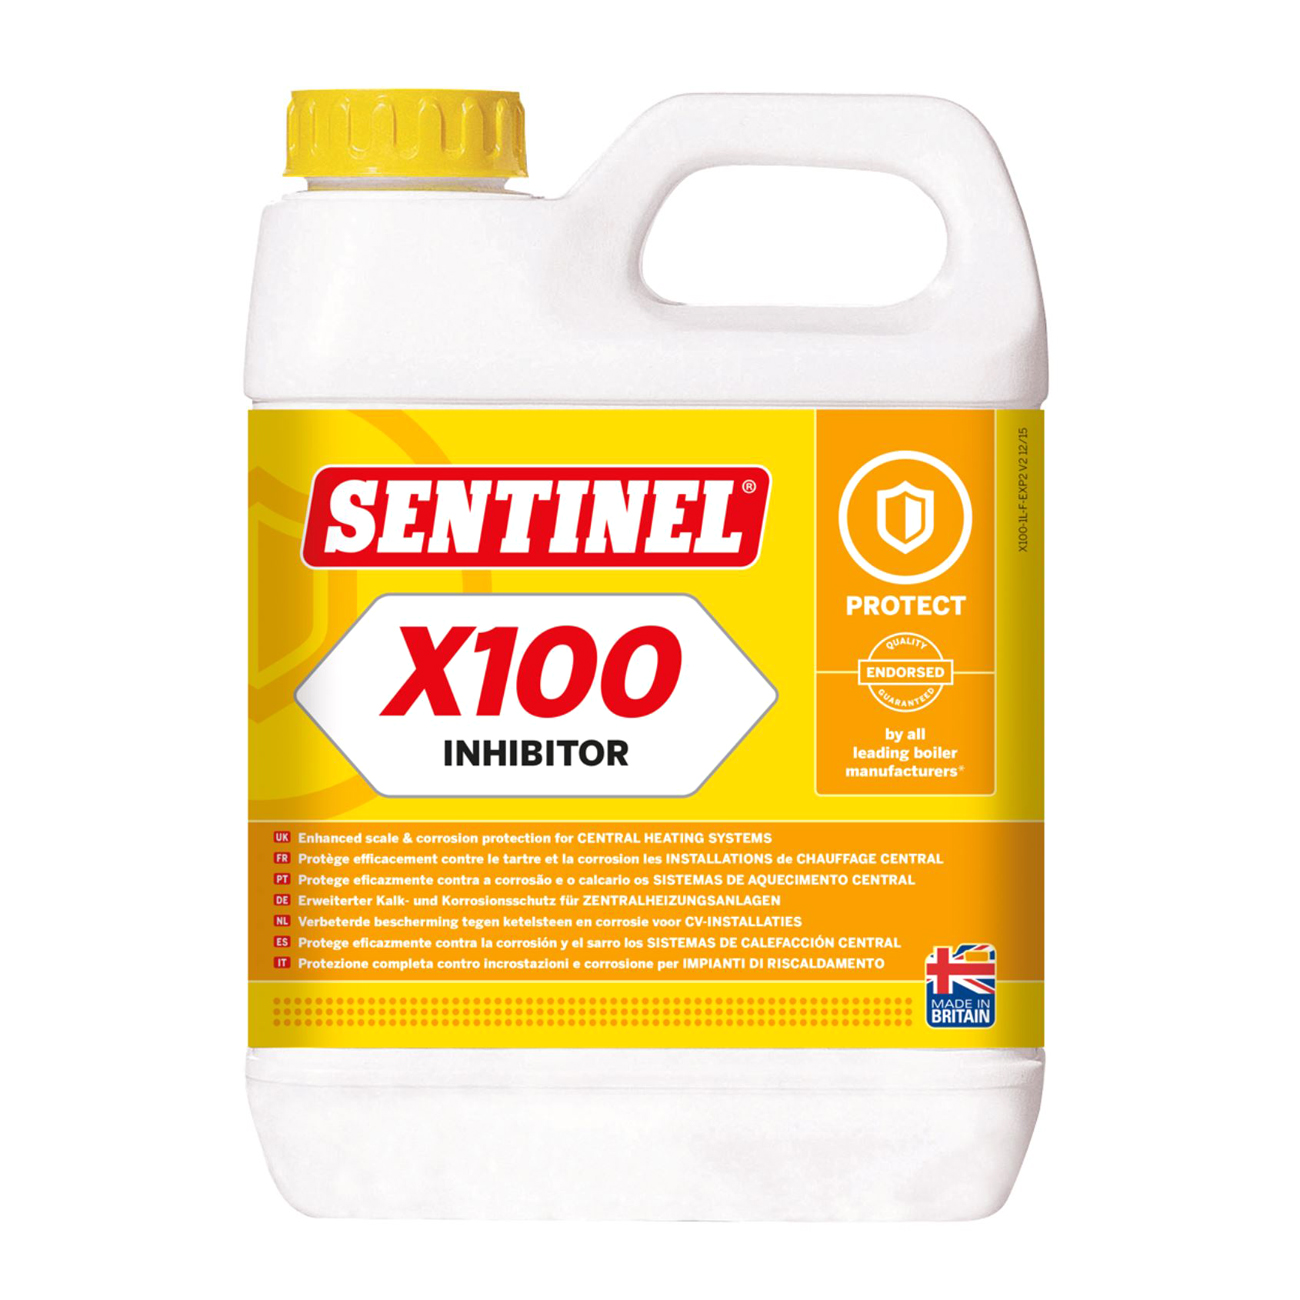 Sentinel X100 Inhibitor - 1 Liter